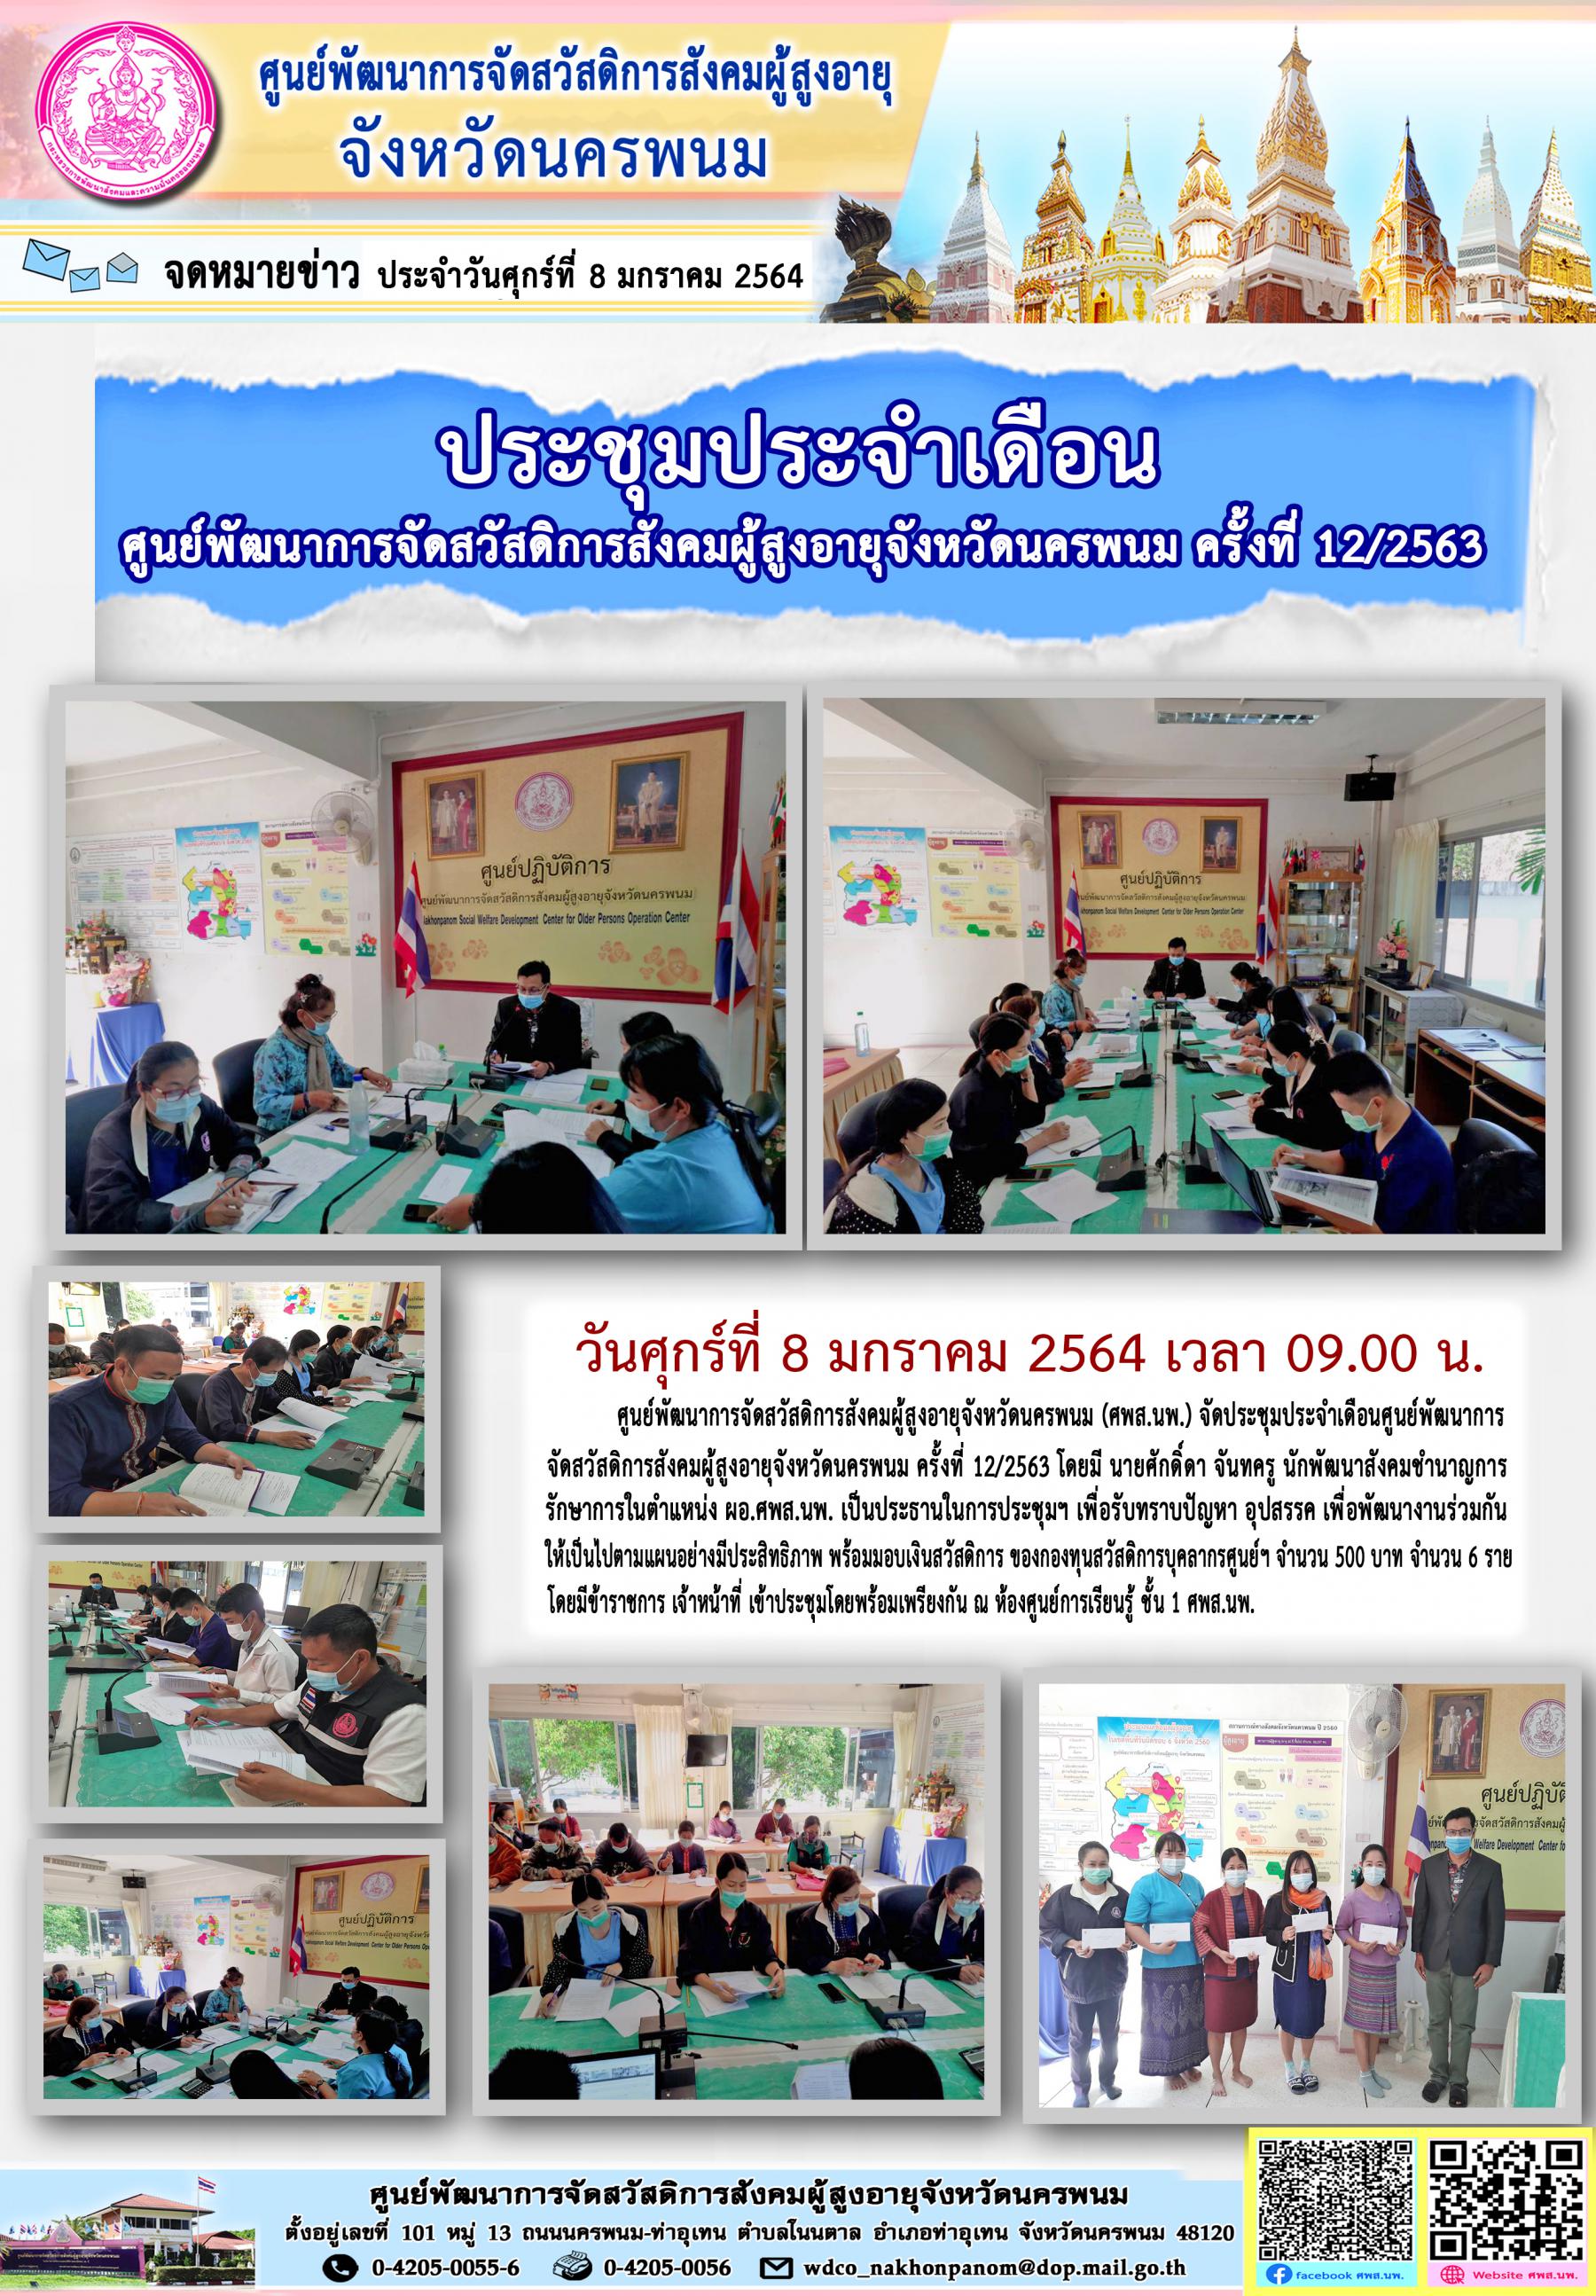 ประชุมประจำเดือนศูนย์พัฒนาการจัดสวัสดิการสังคมผู้สูงอายุจังหวัดนครพนม ครั้งที่ 12/2563